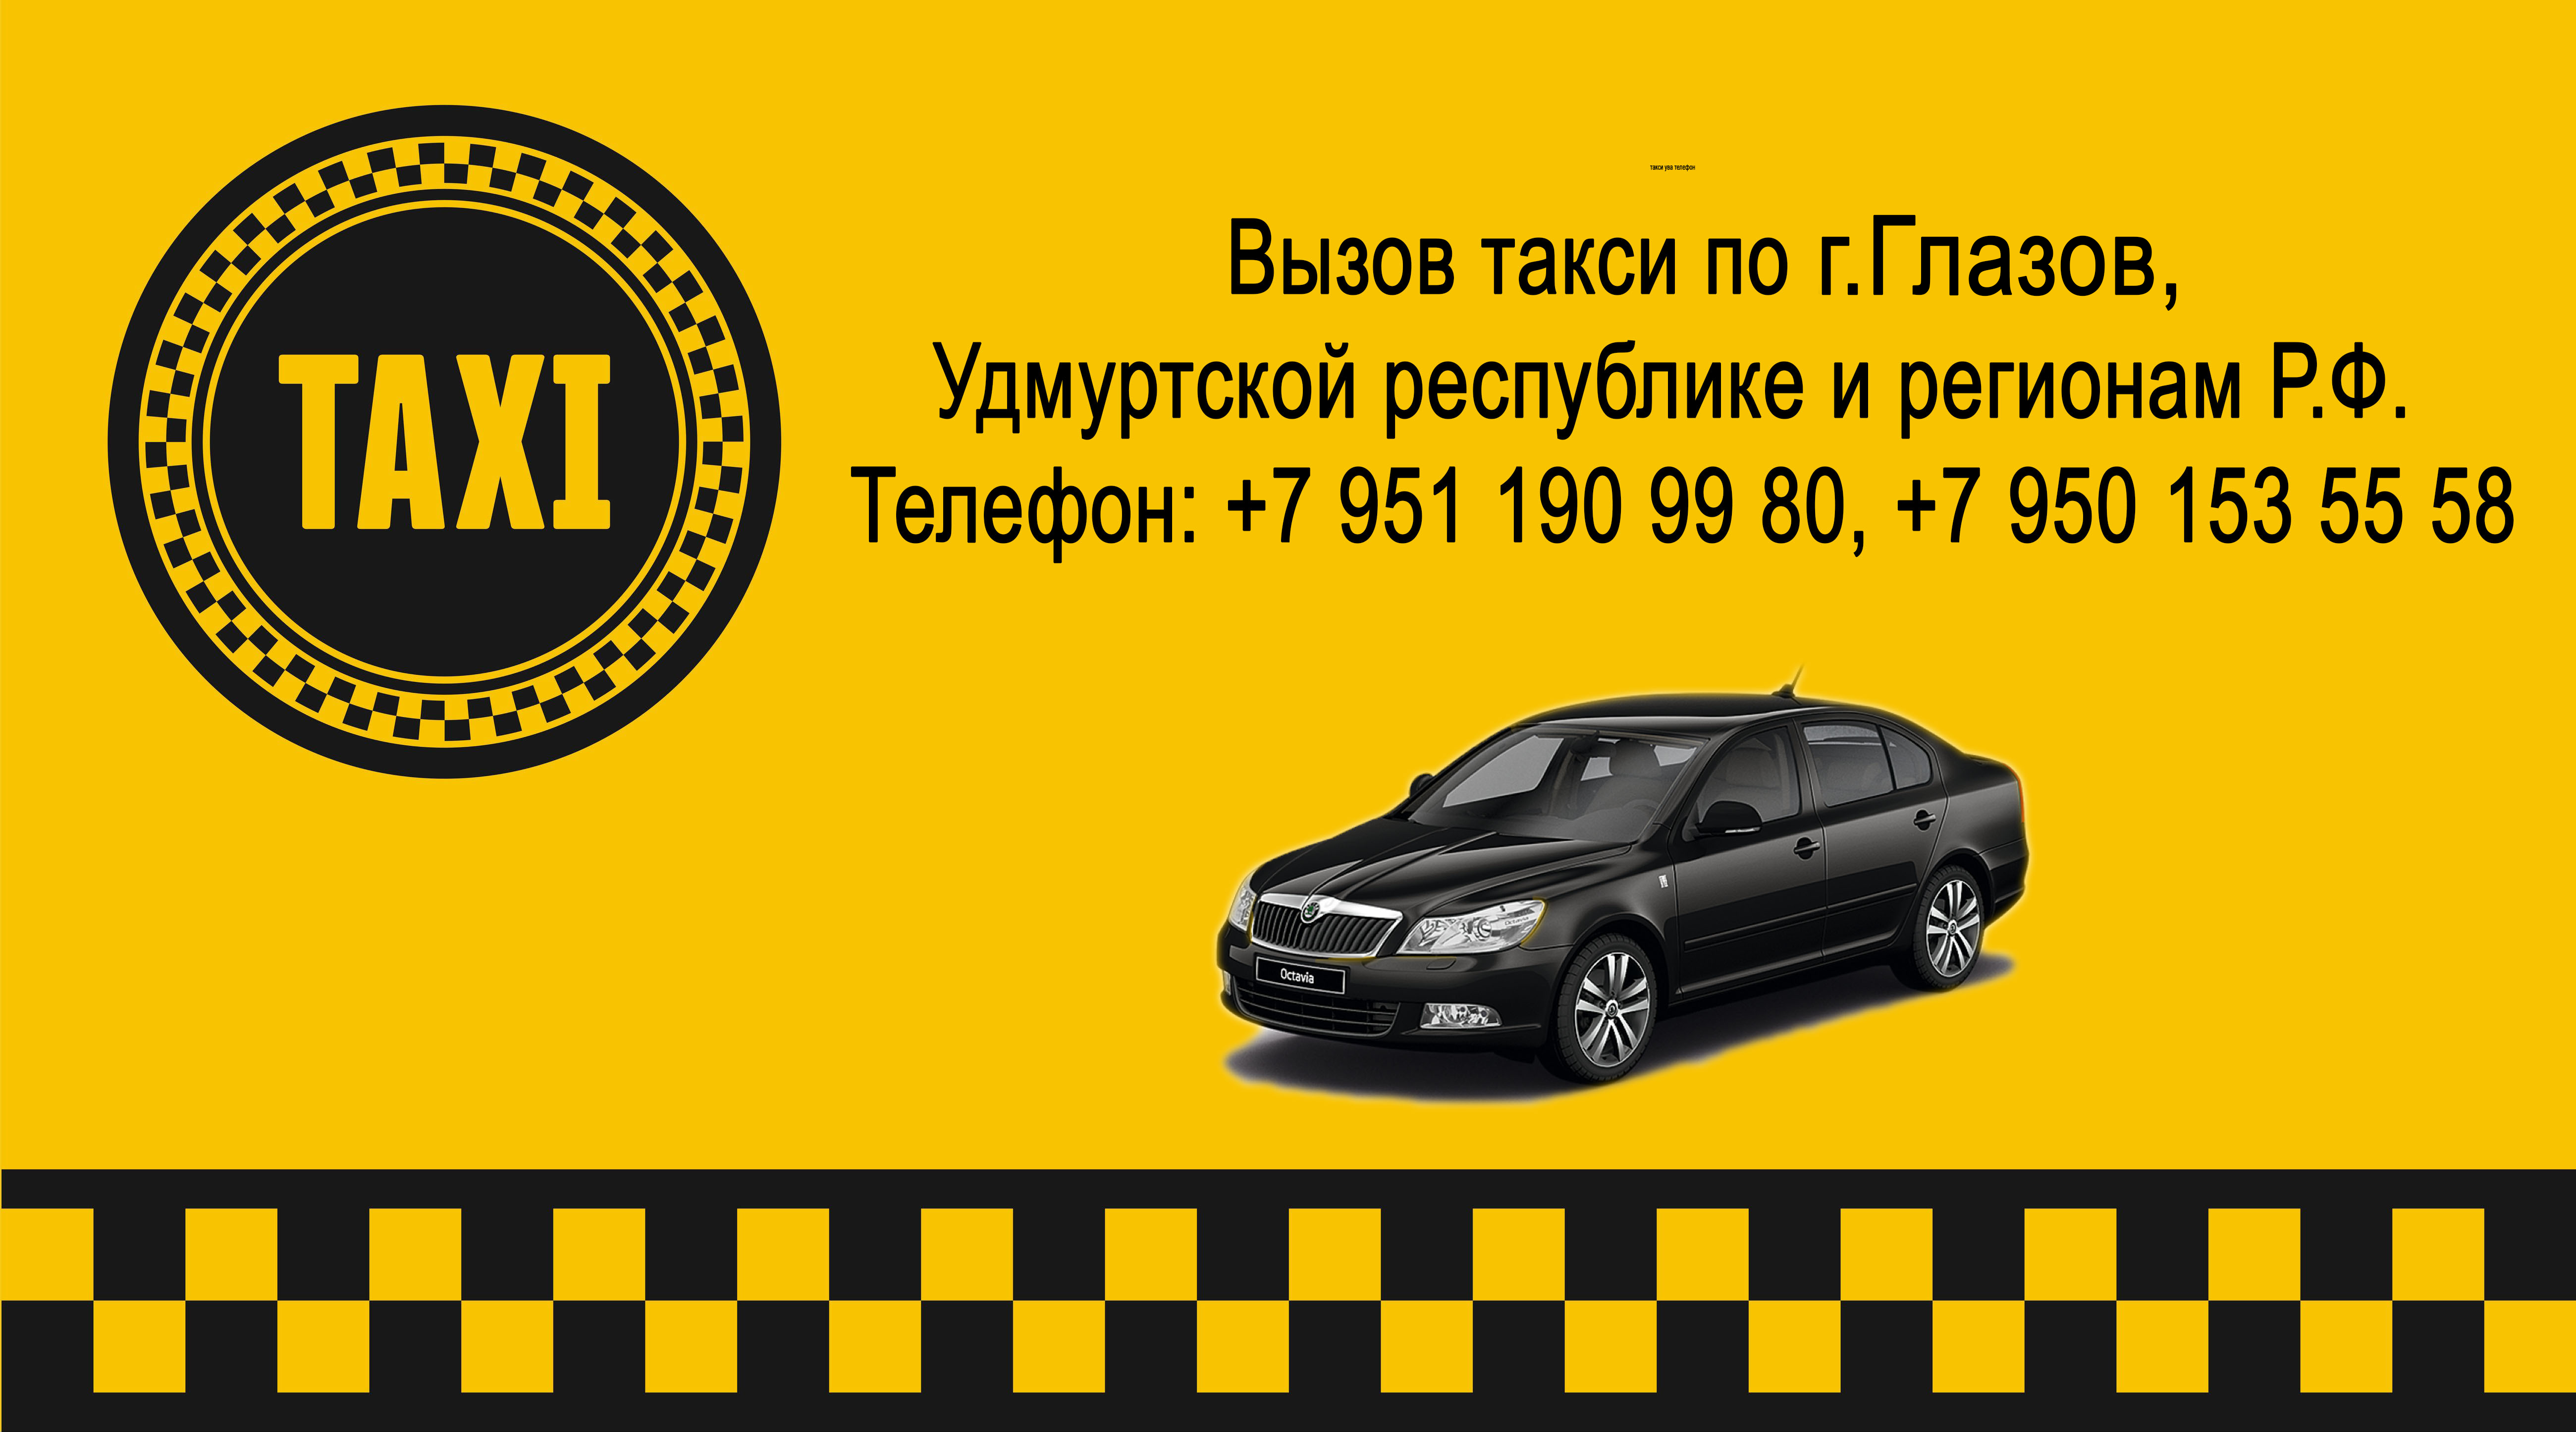 Номер такси сказать. Номер такси. Номера таксистов. Такси Ува. Такси номер такси.